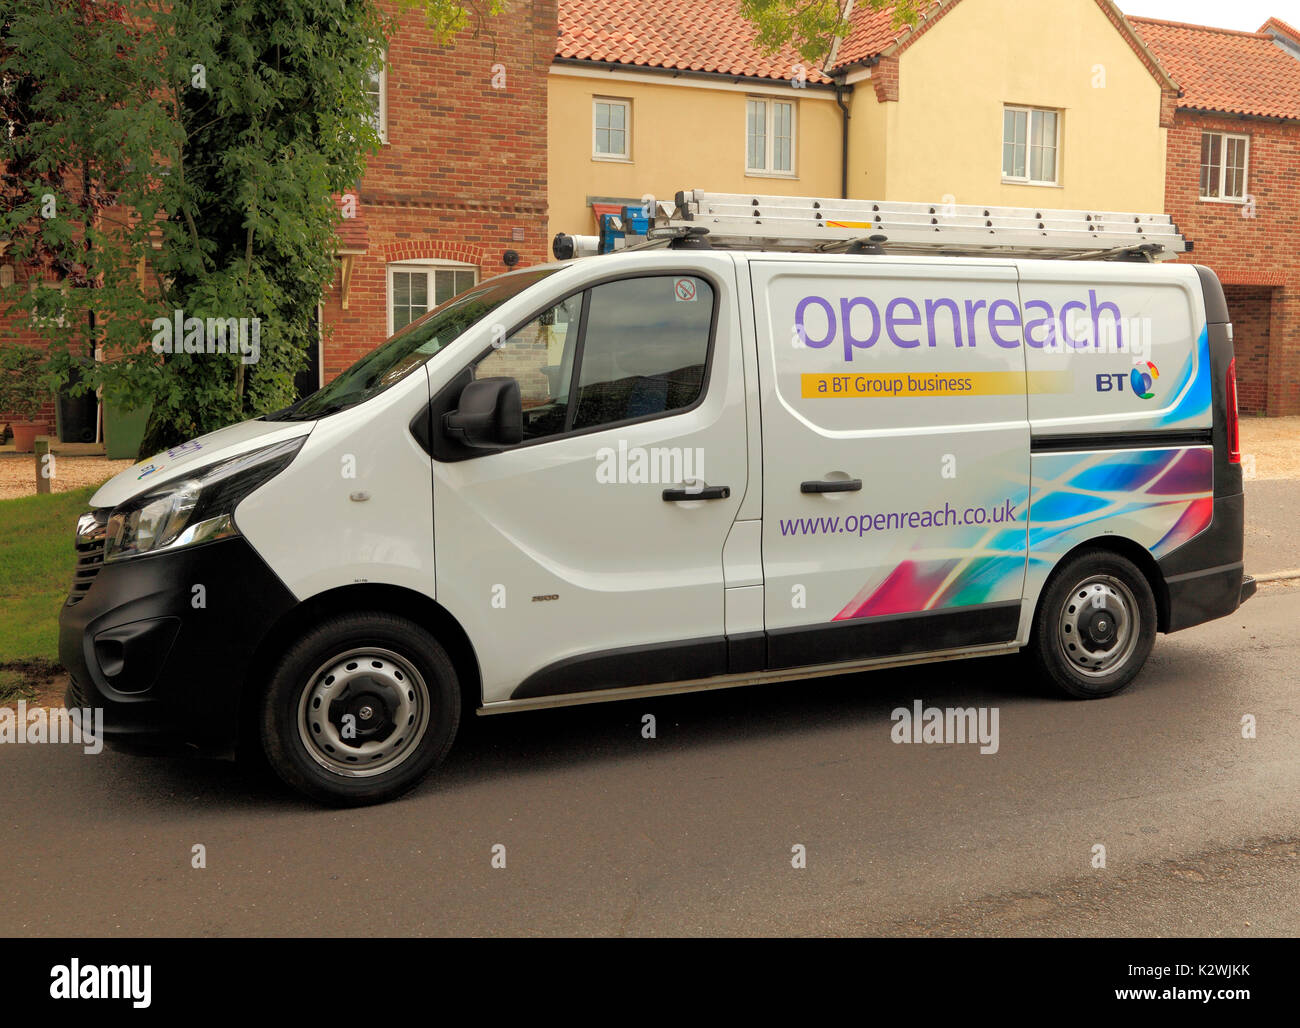 Openreach, abra alcanzar, BT, British Telecom, Van, servicio, reparación, vehículo, vehículos, camionetas, reparaciones, mantenimiento, Inglaterra, Reino Unido. Foto de stock